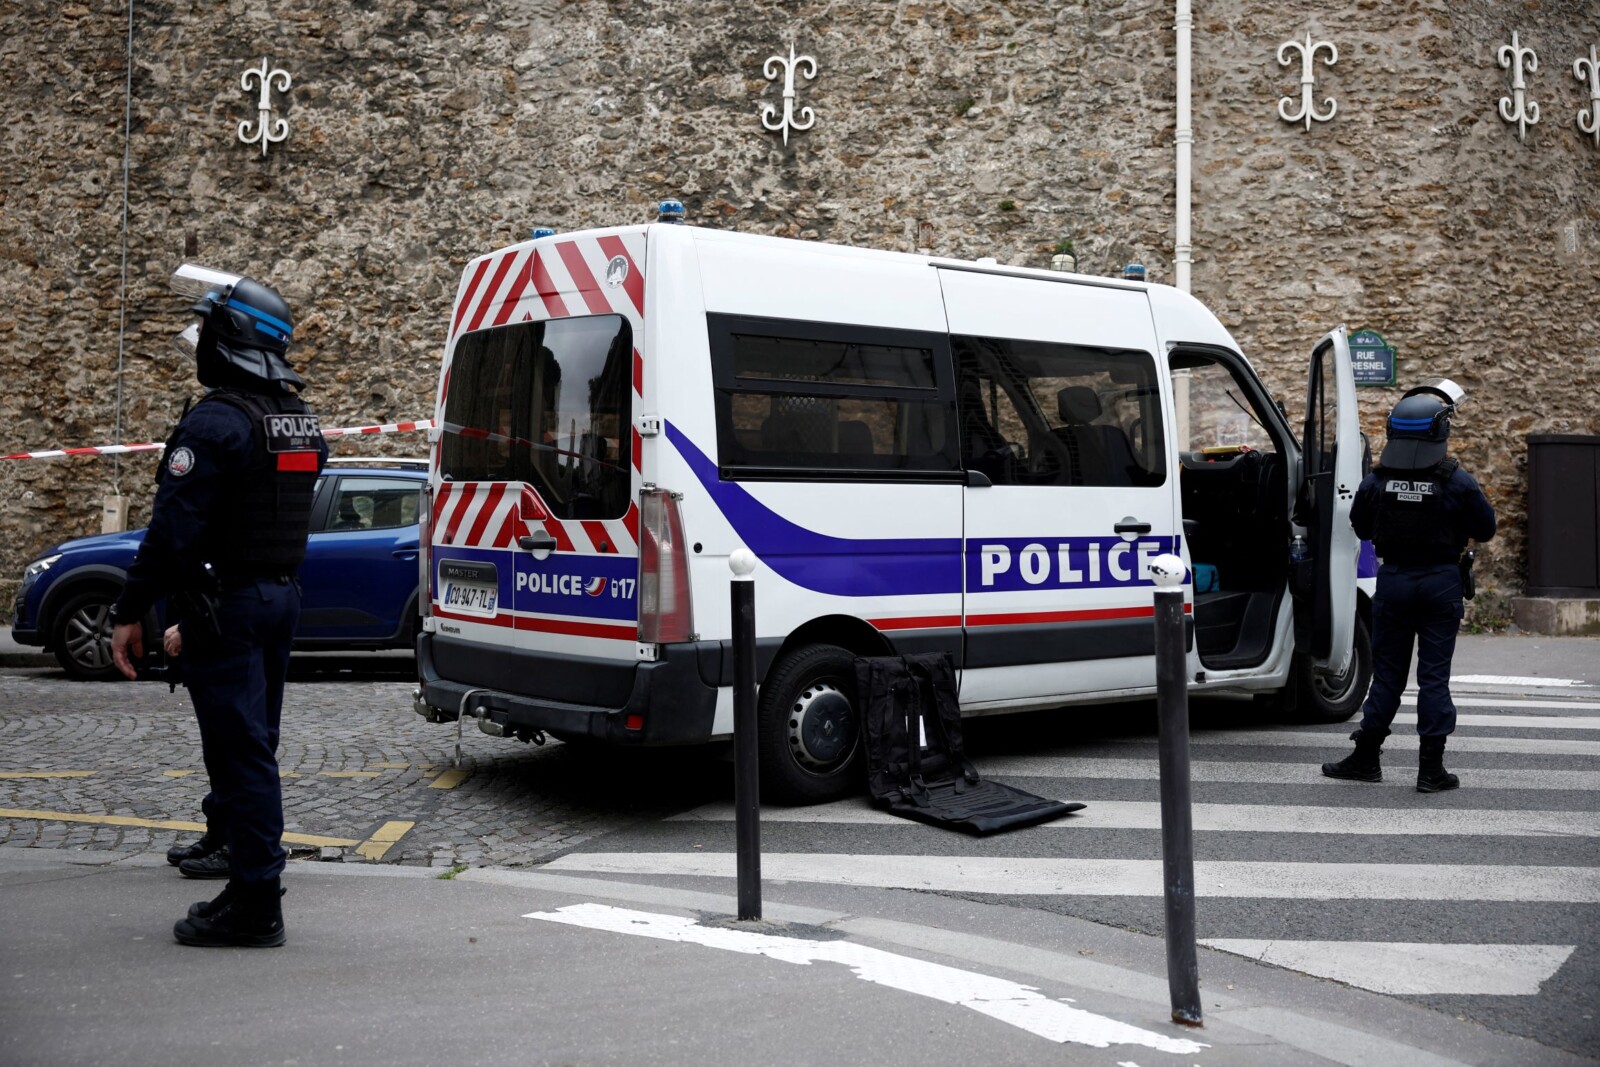 שוטרים וניידת משטרה סמוך לקונסוליה האיראנית בפריז, באירוע בו אדם איים לפוצץ את עצמו (צילום: REUTERS/Benoit Tessier(